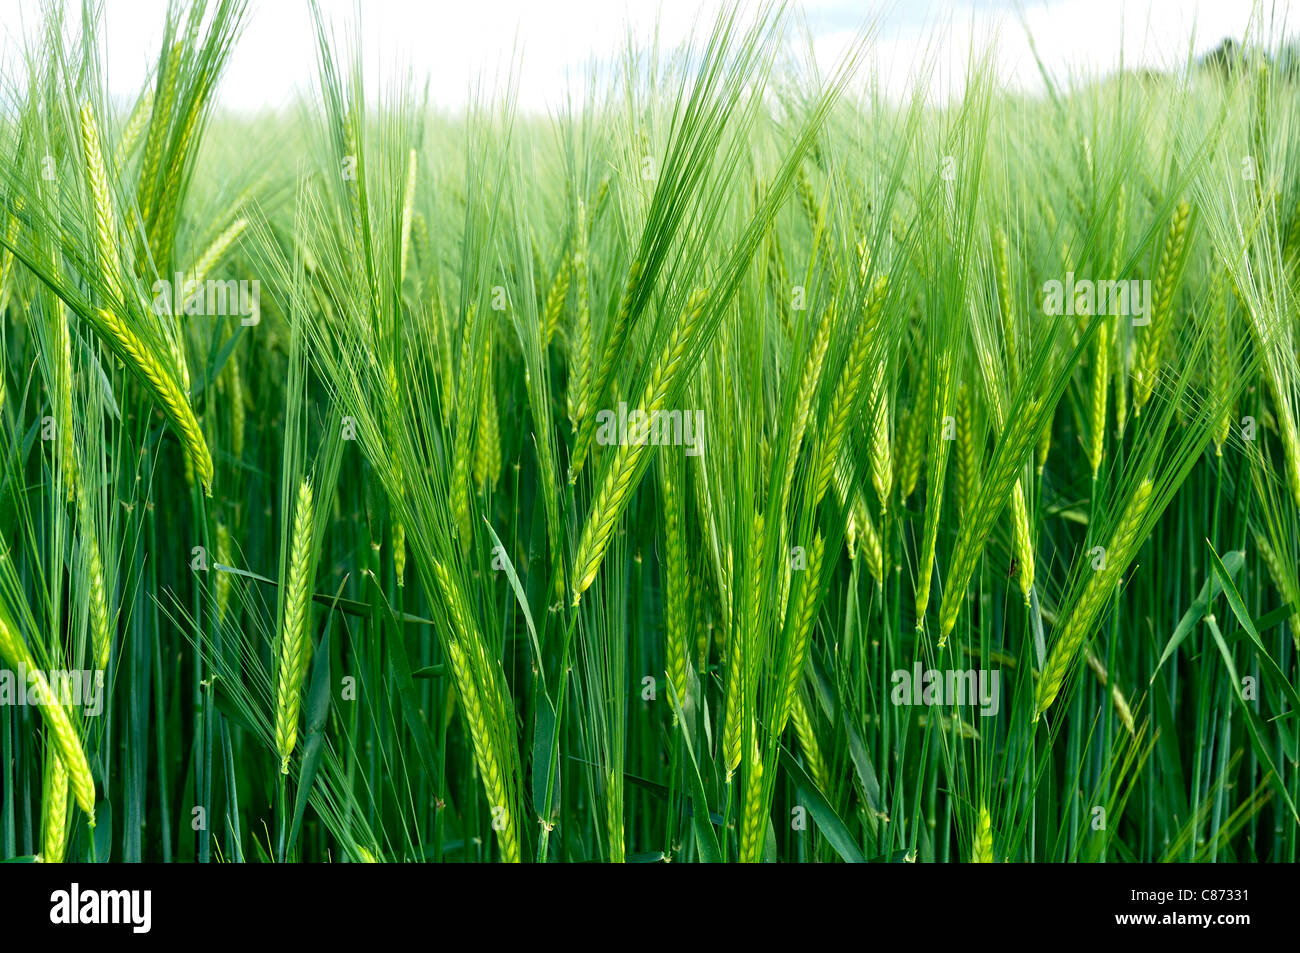 Field of barley (Hordeum sp) in spring. Stock Photo